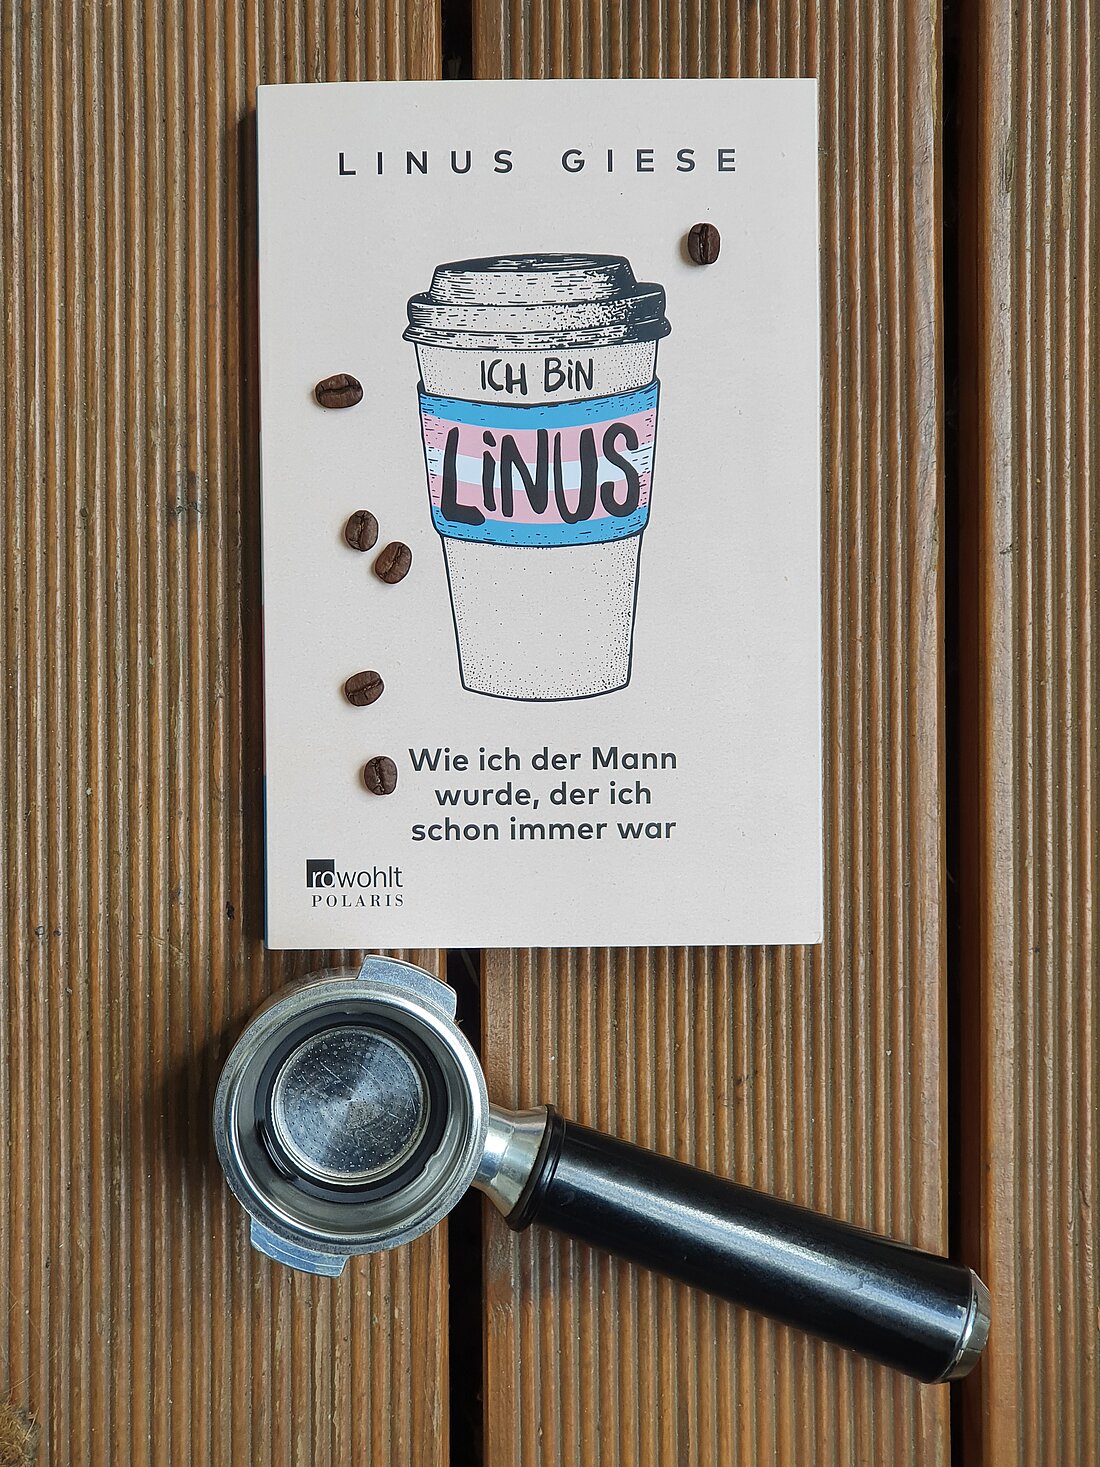 Das Buch "Ich bin Linus" liegt auf Holzdielen mit einem Siebträger und ein paar Kaffeebohnen.